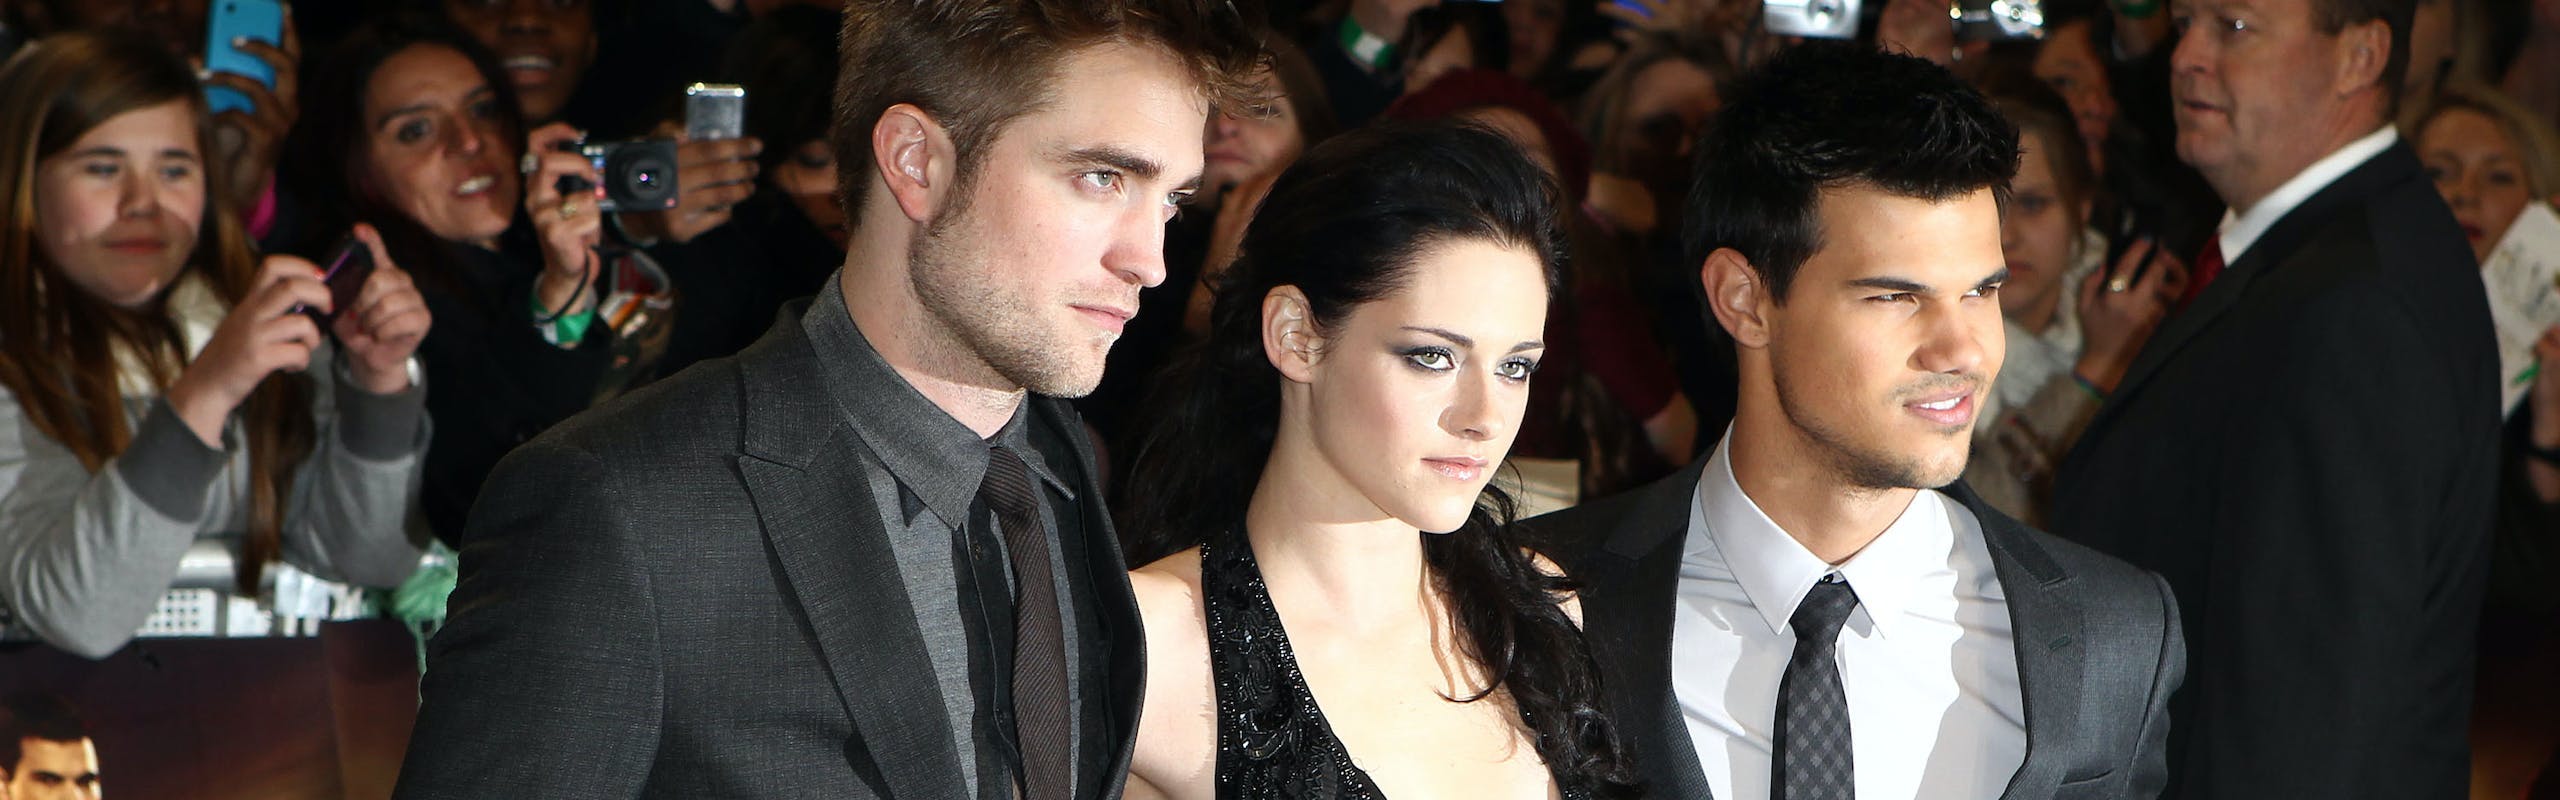 Robert Pattinson, Kirsten Stewart, and Taylor Lautner at the Twilight movie premiere.